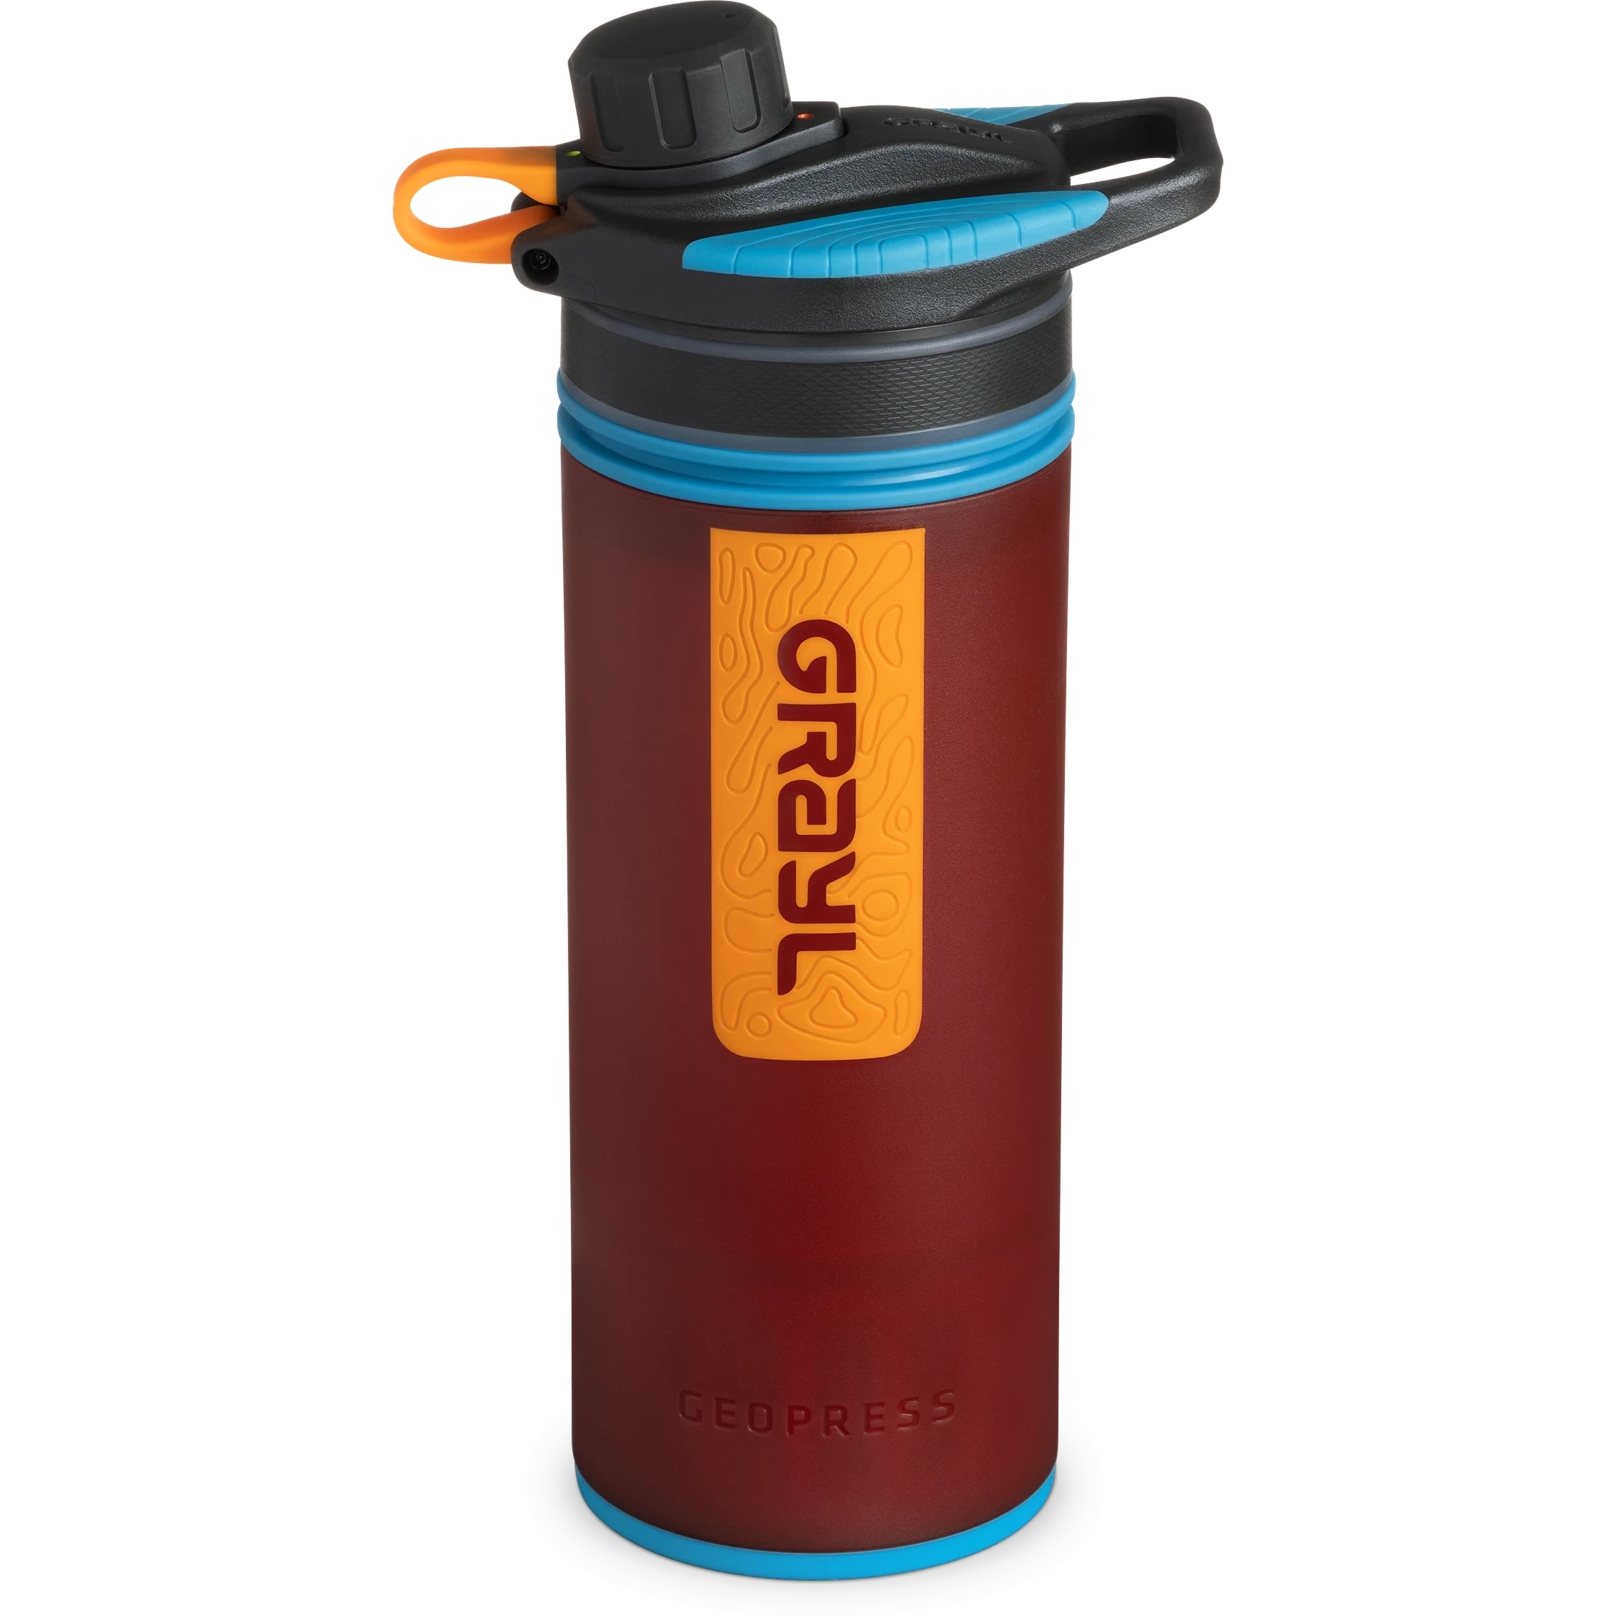 Produktbild von Grayl GeoPress Trinkflasche mit Wasserfilter - 710ml - Wanderer Red